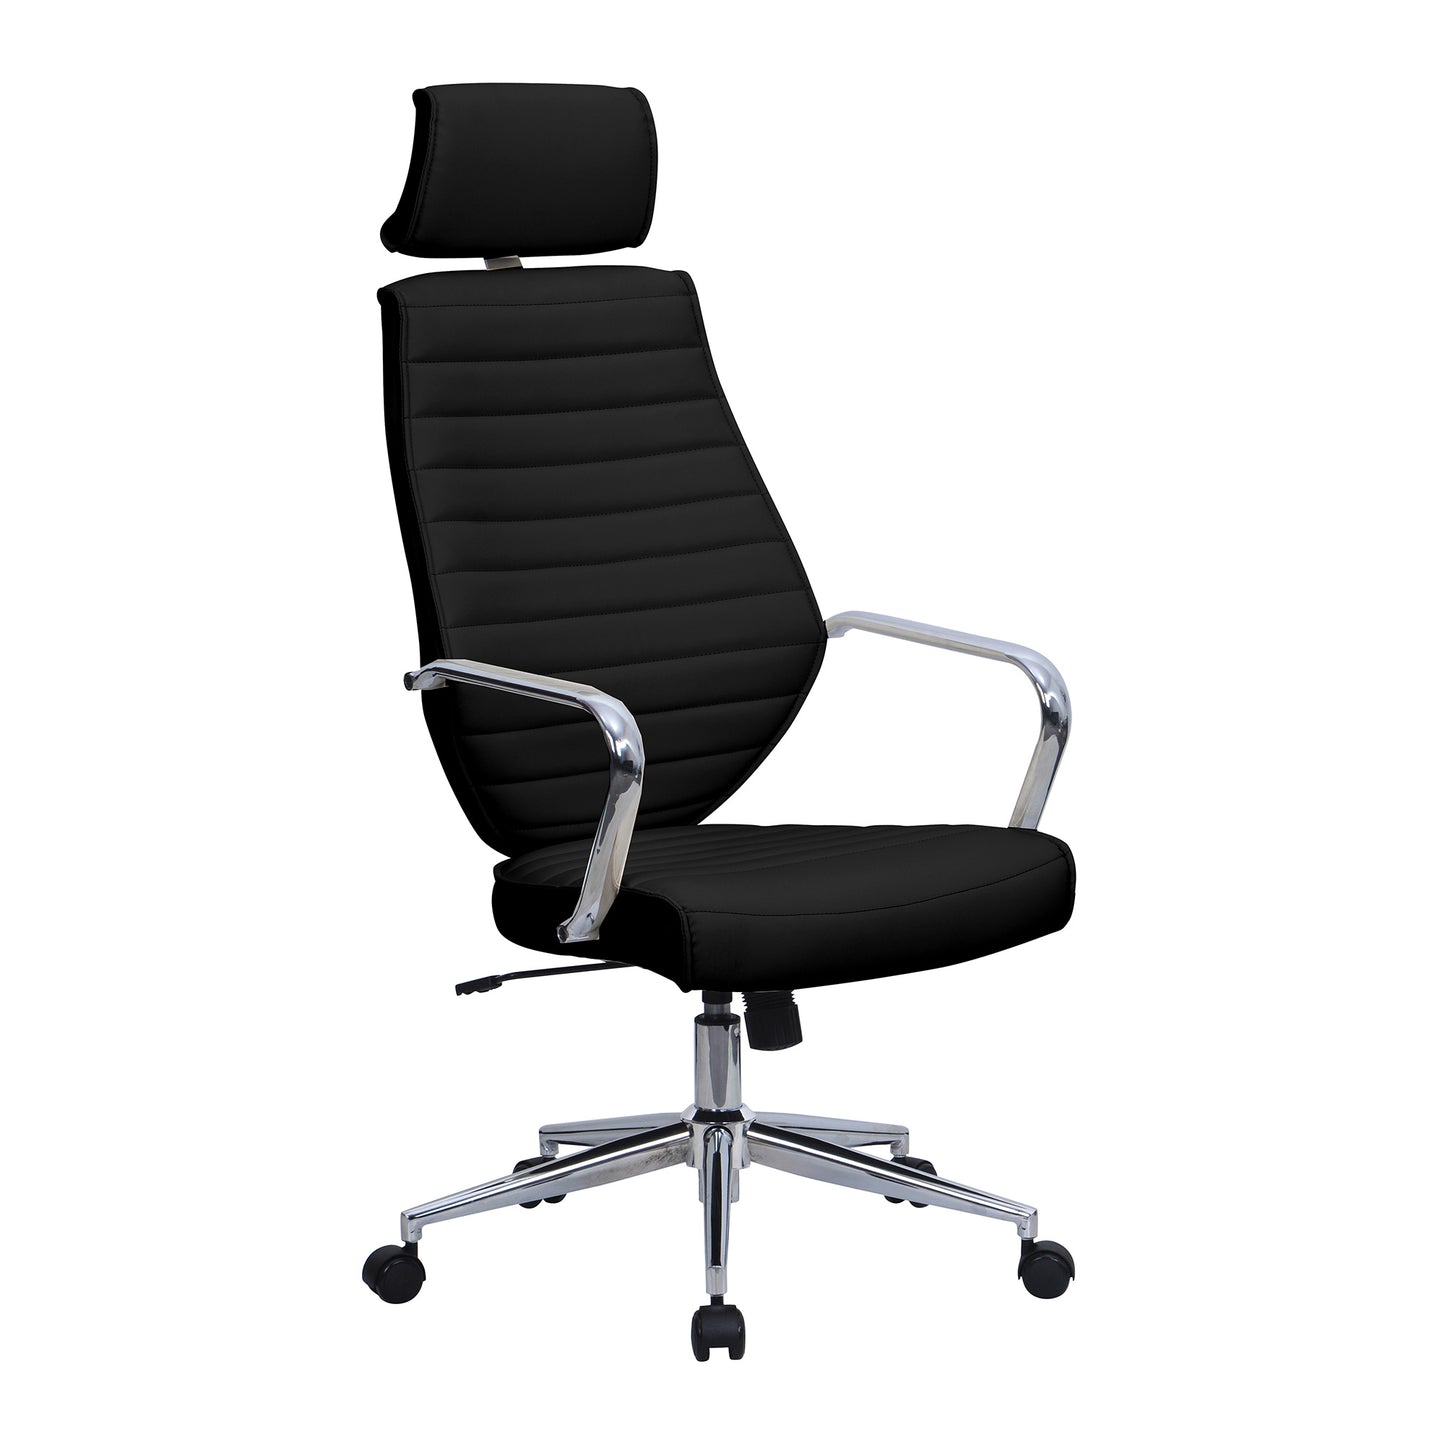 Office chair 53 x 60 cm - BIJ14